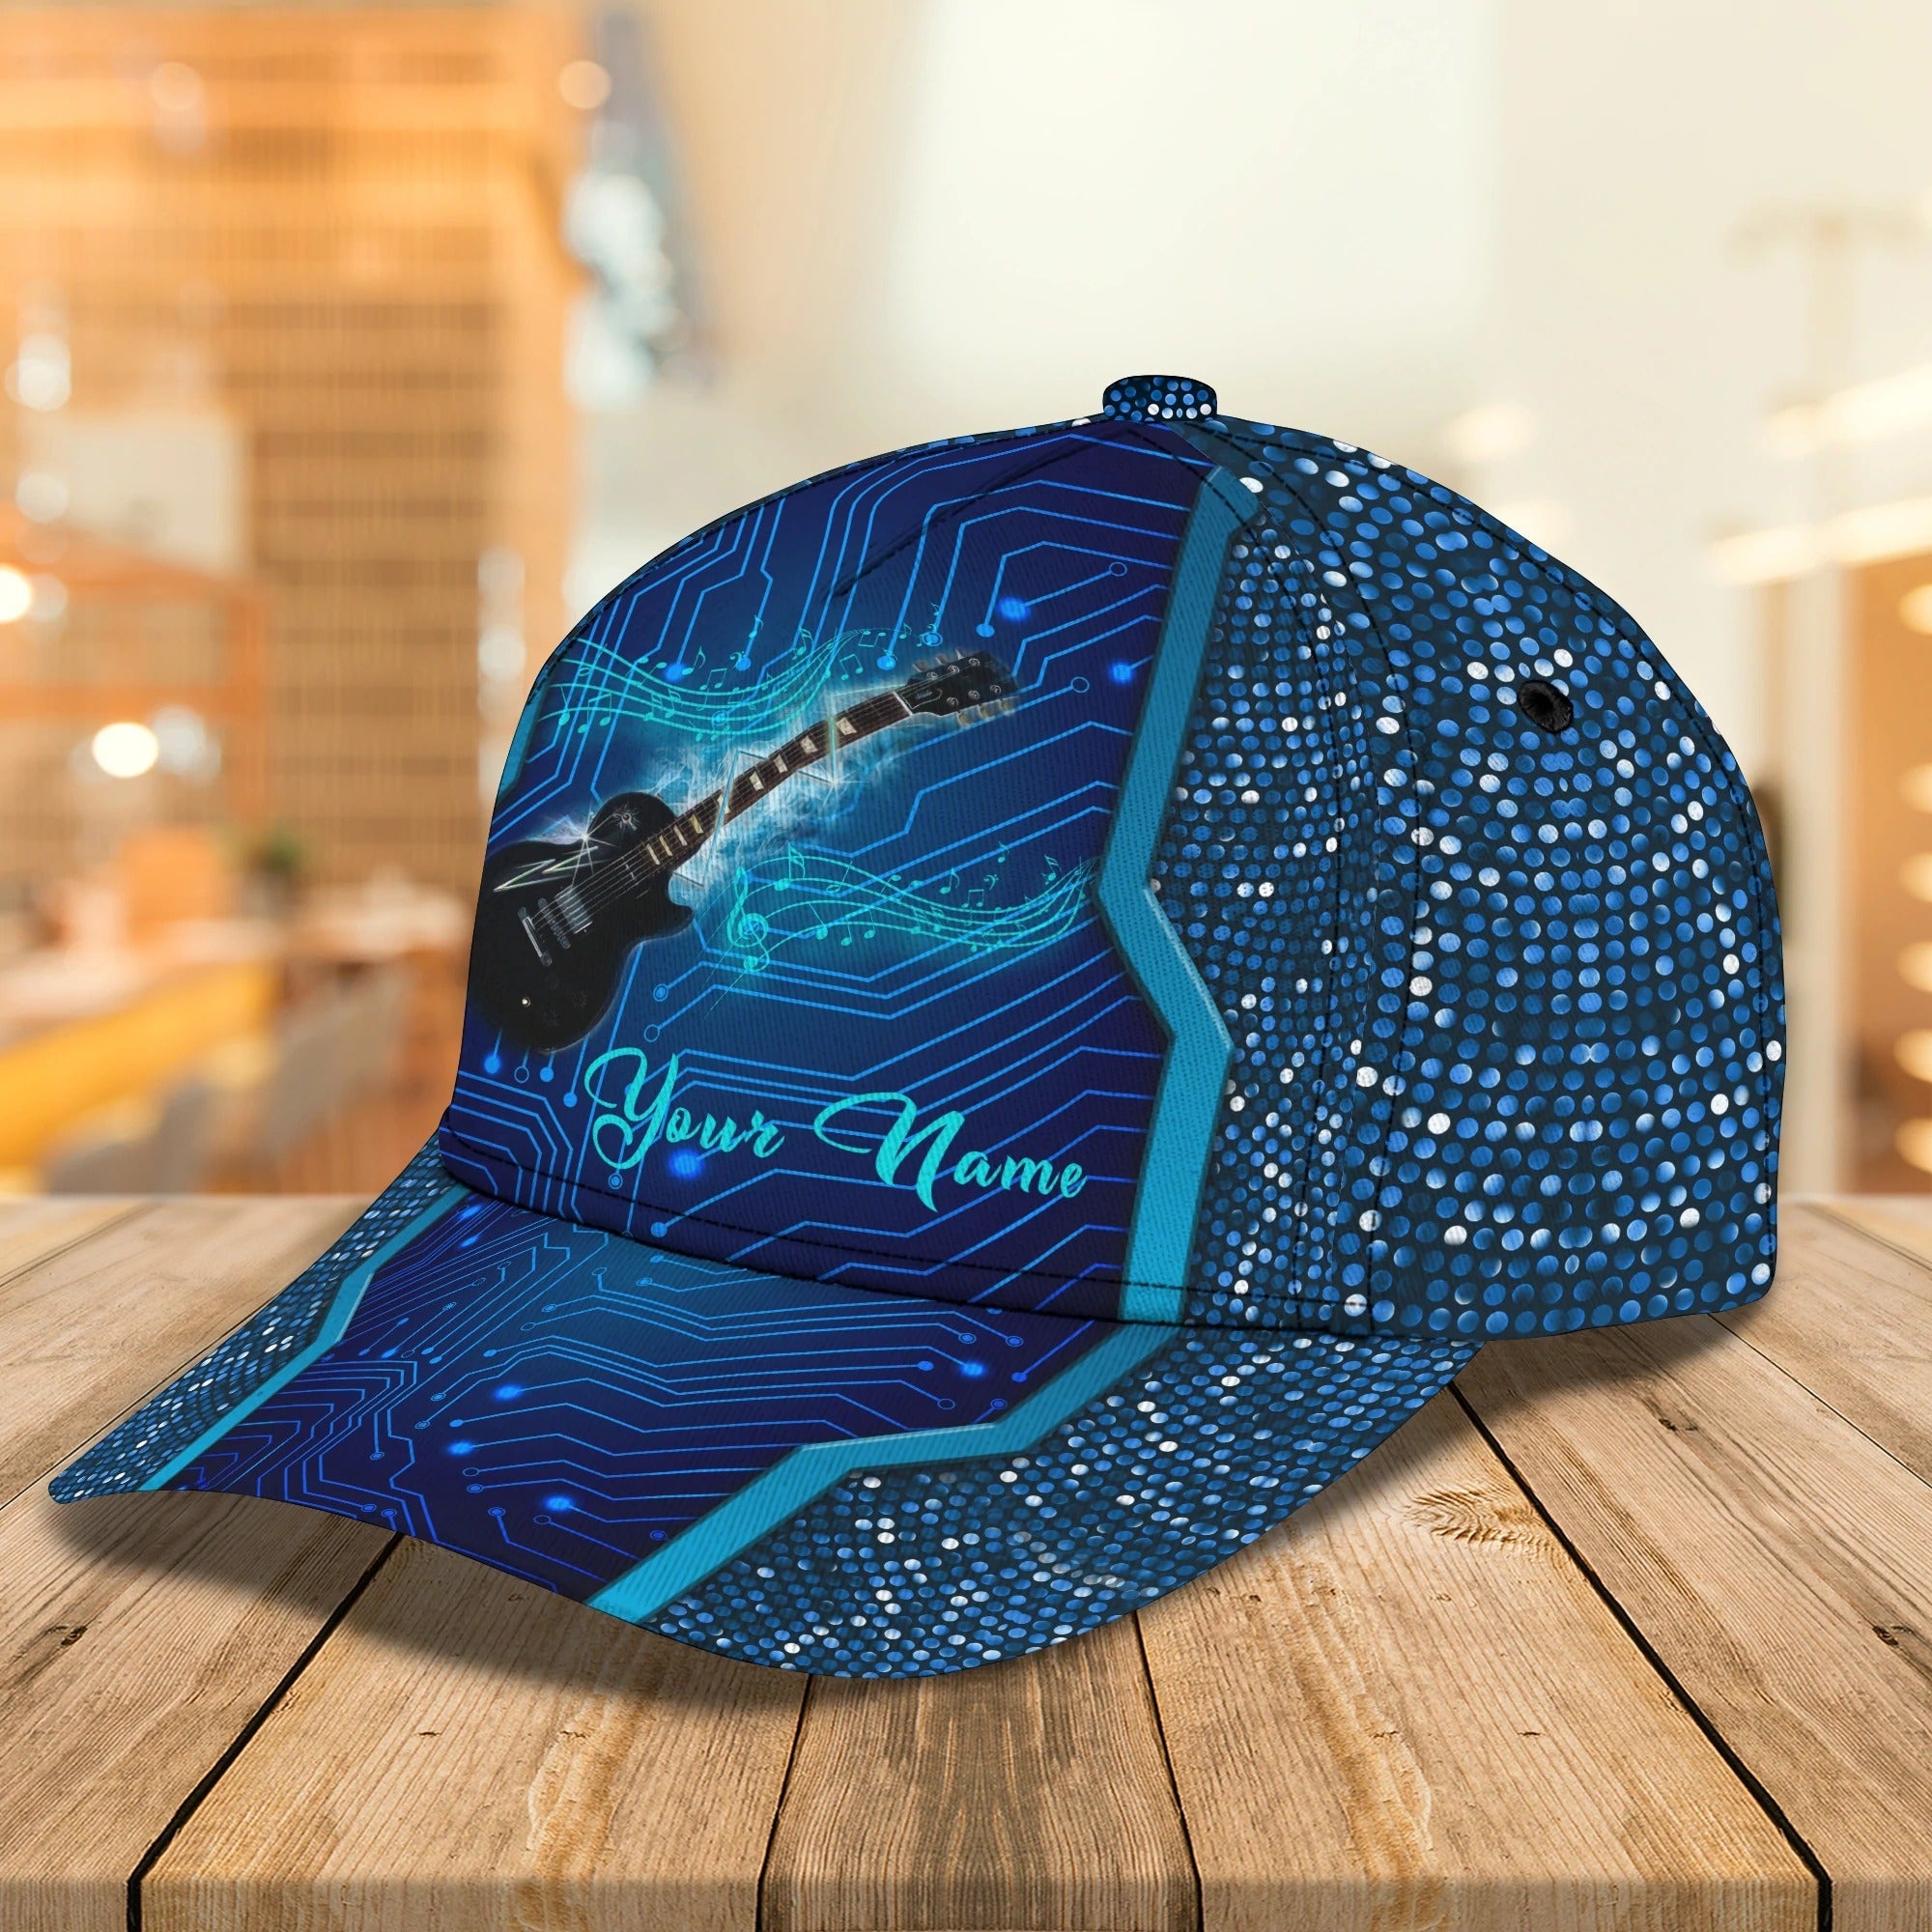 Personalized Beautiful Guitar Full Print Cap Hat For Adult/ Colorful Classic 3D Guitar Cap For Musican